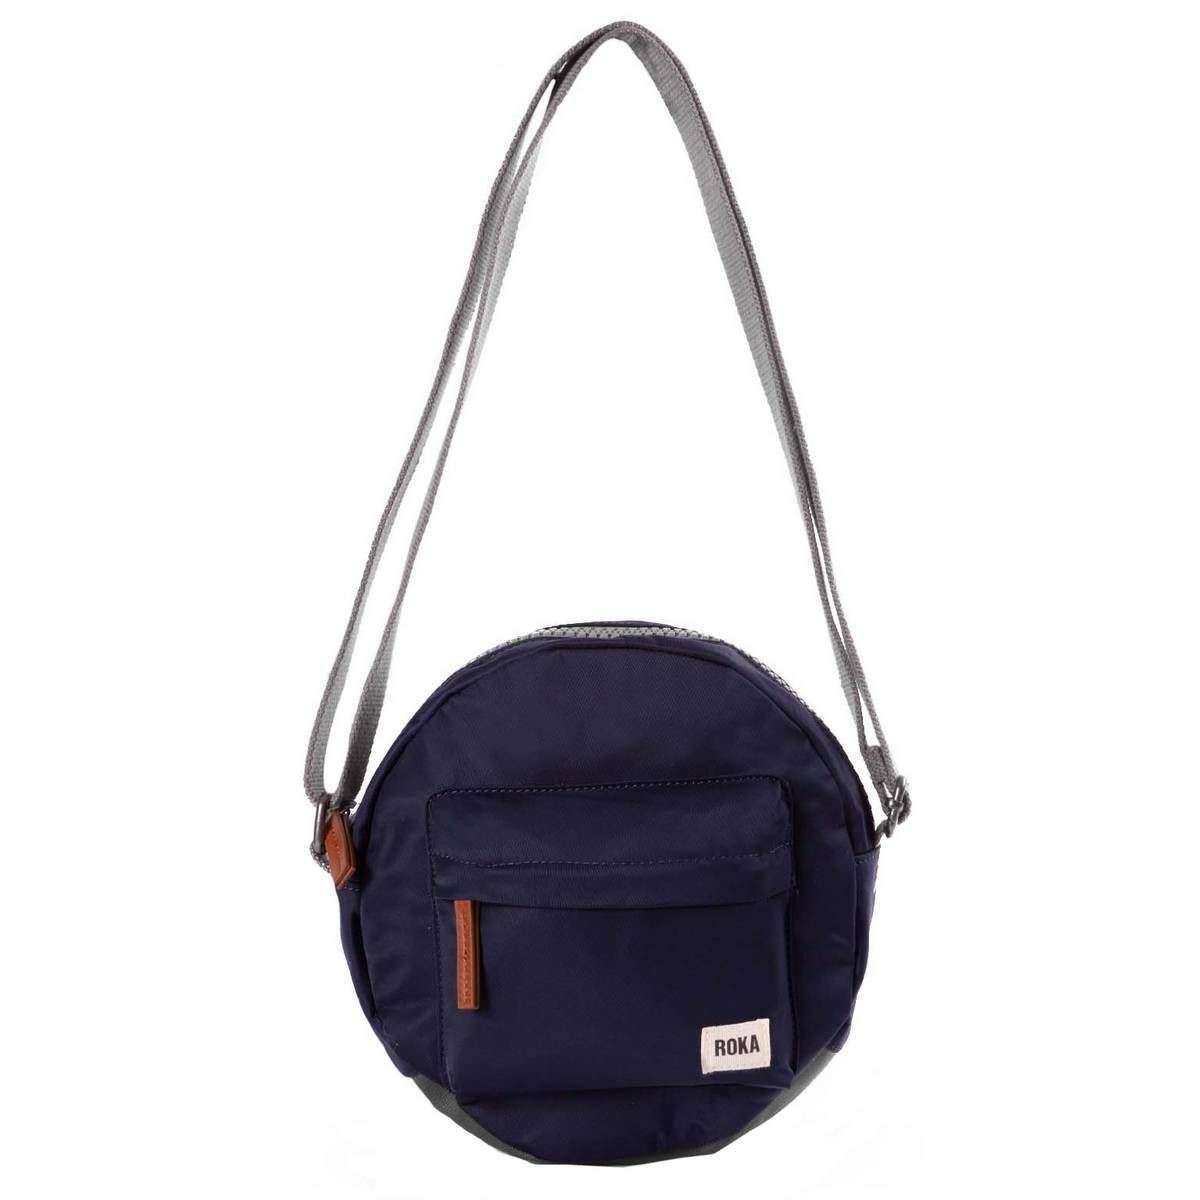 Roka Paddington B Small Sustainable Nylon Crossbody Bag - Midnight Blue